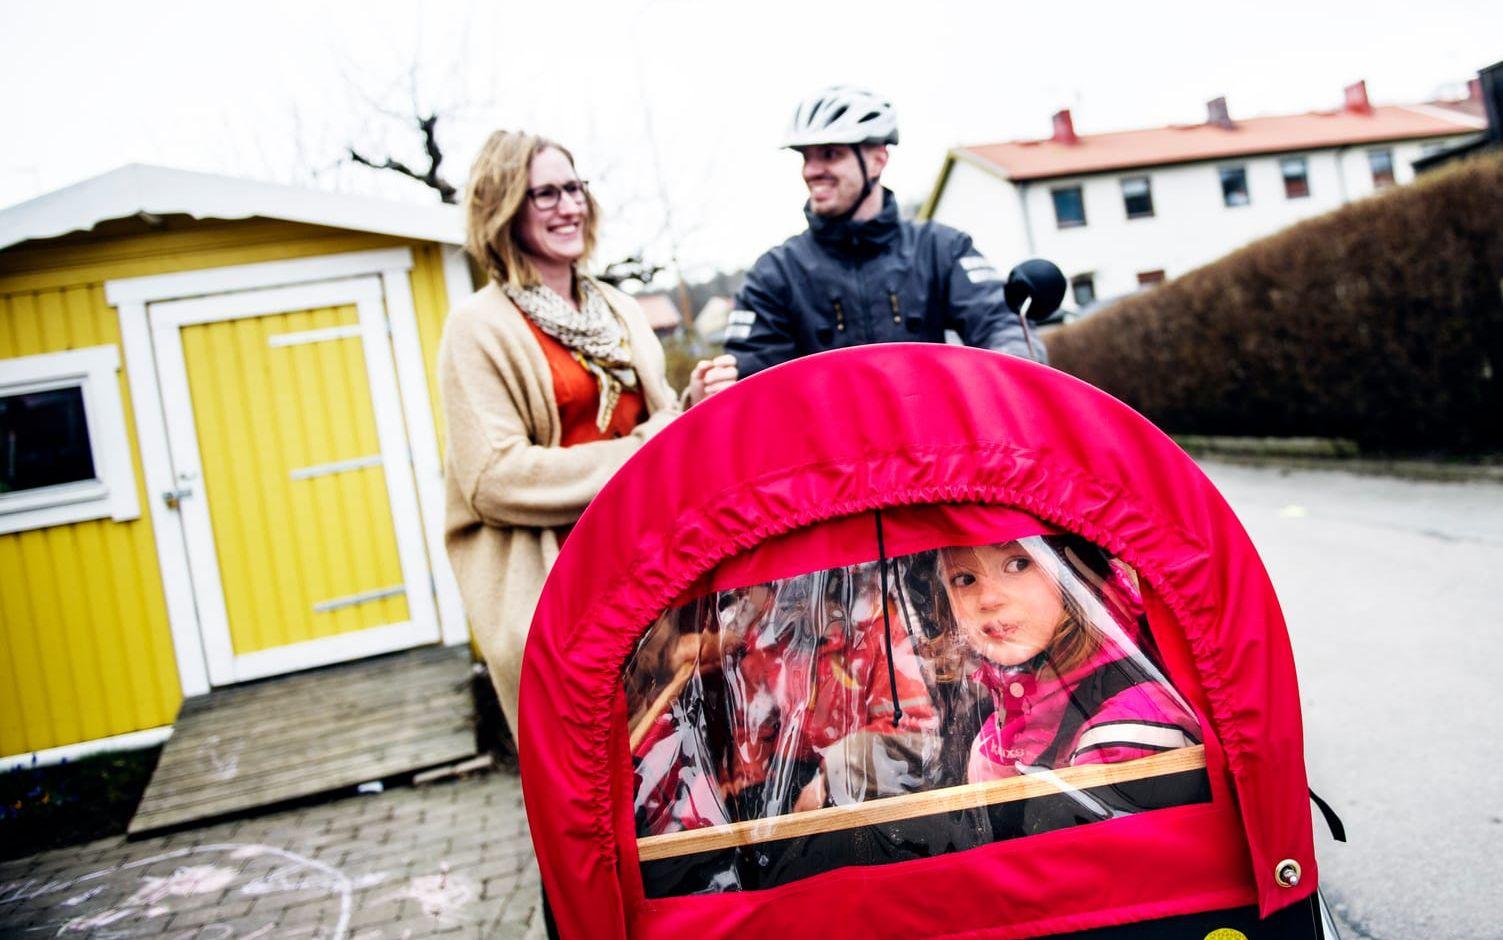 Trots att det bara haft cykeln under vintern, har vädret inte varit ett stort problem för familjen. Bild: Anna Svanberg